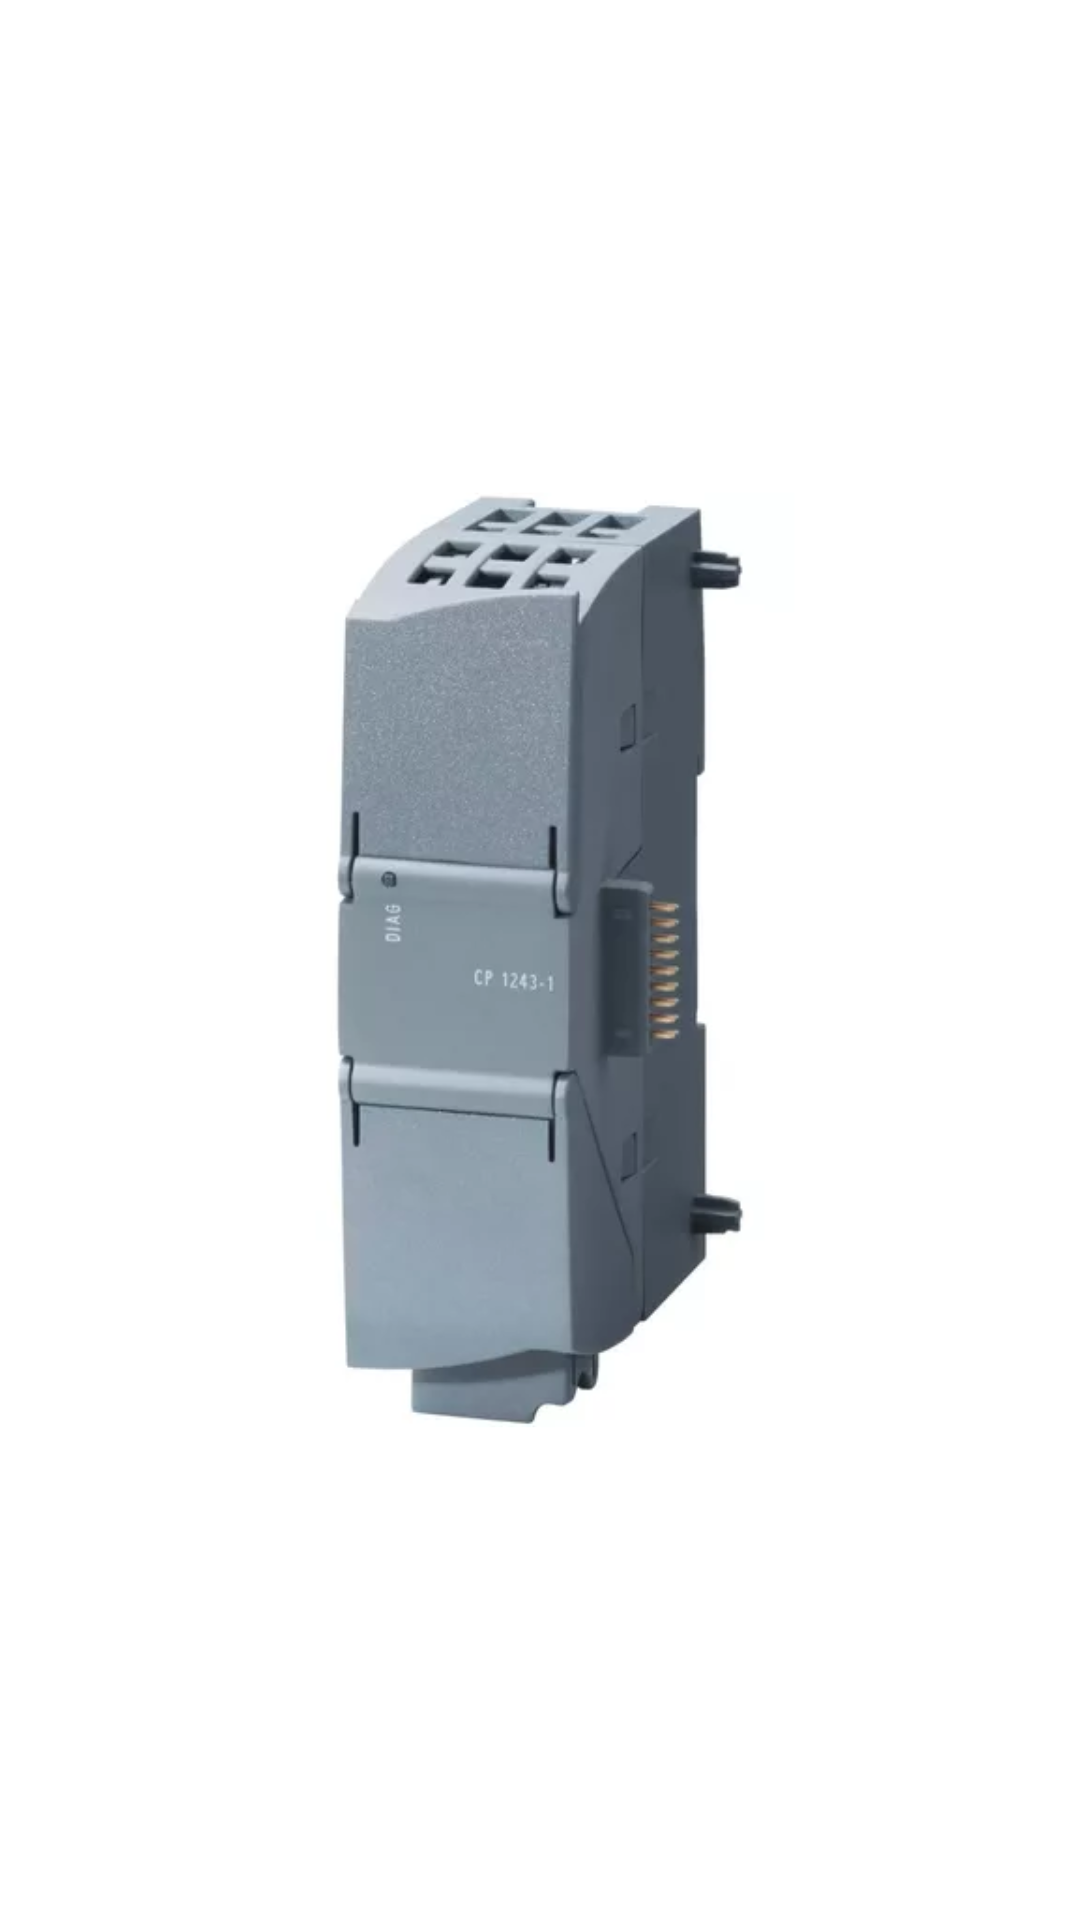 6GK7243-1BX30-0XE0 Siemans Procesador de comunicaciones CP 1243-1 para conexión de SIMATIC S7-1200 como interfaz Ethernet adicional